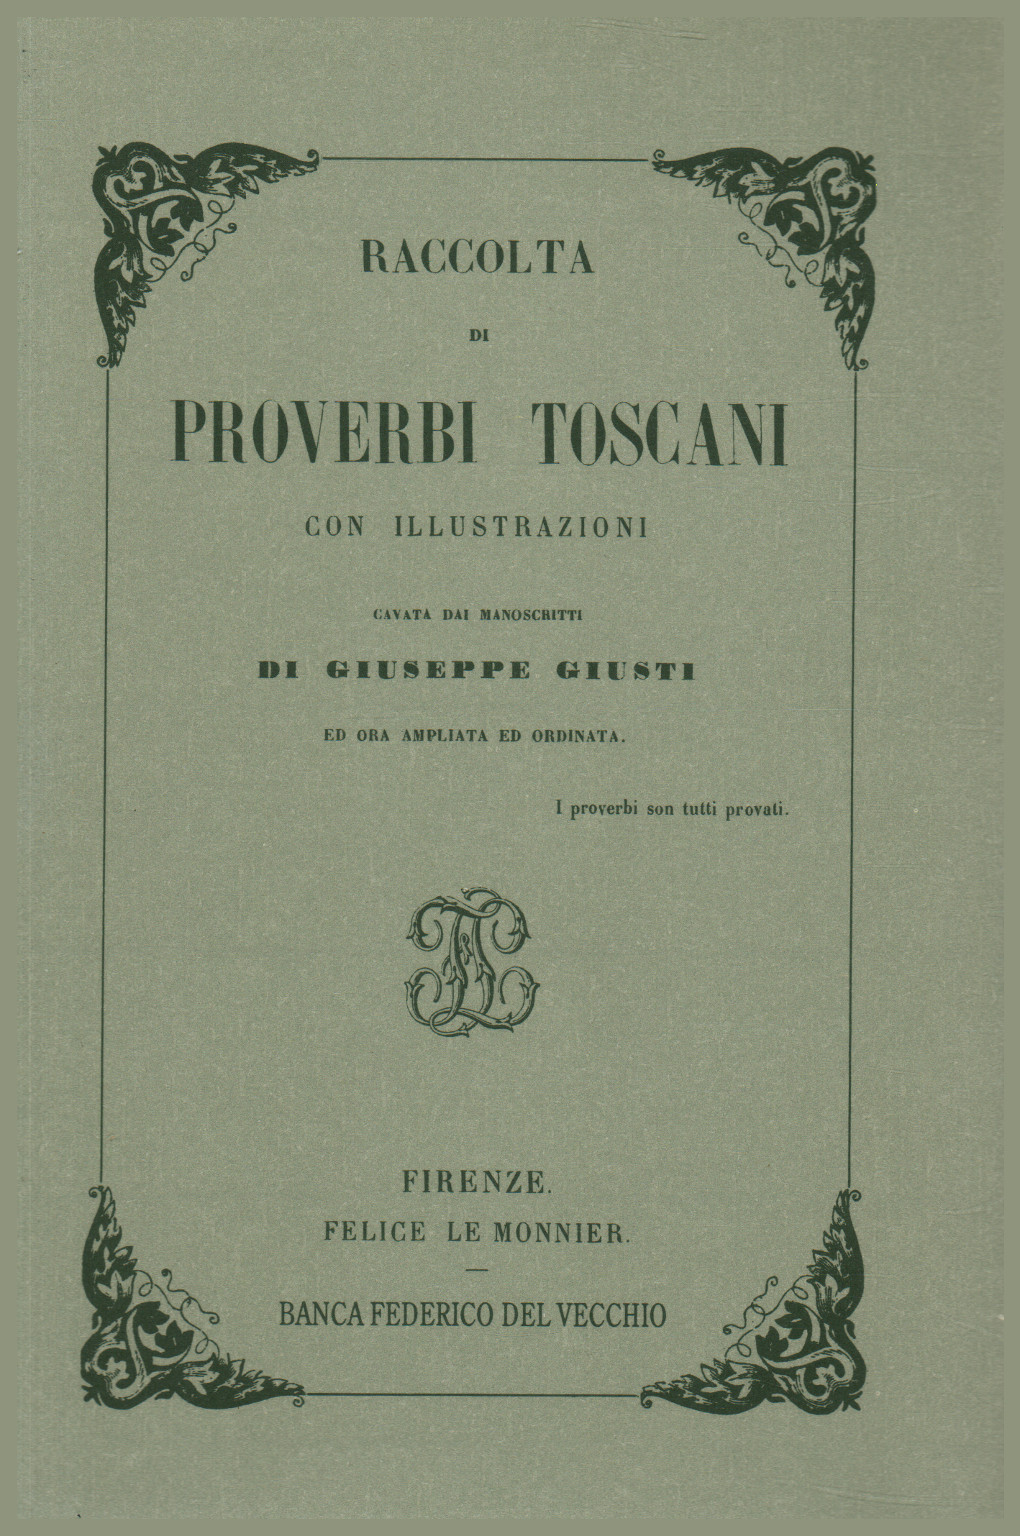 Colección de proverbios de la toscana, s.una.